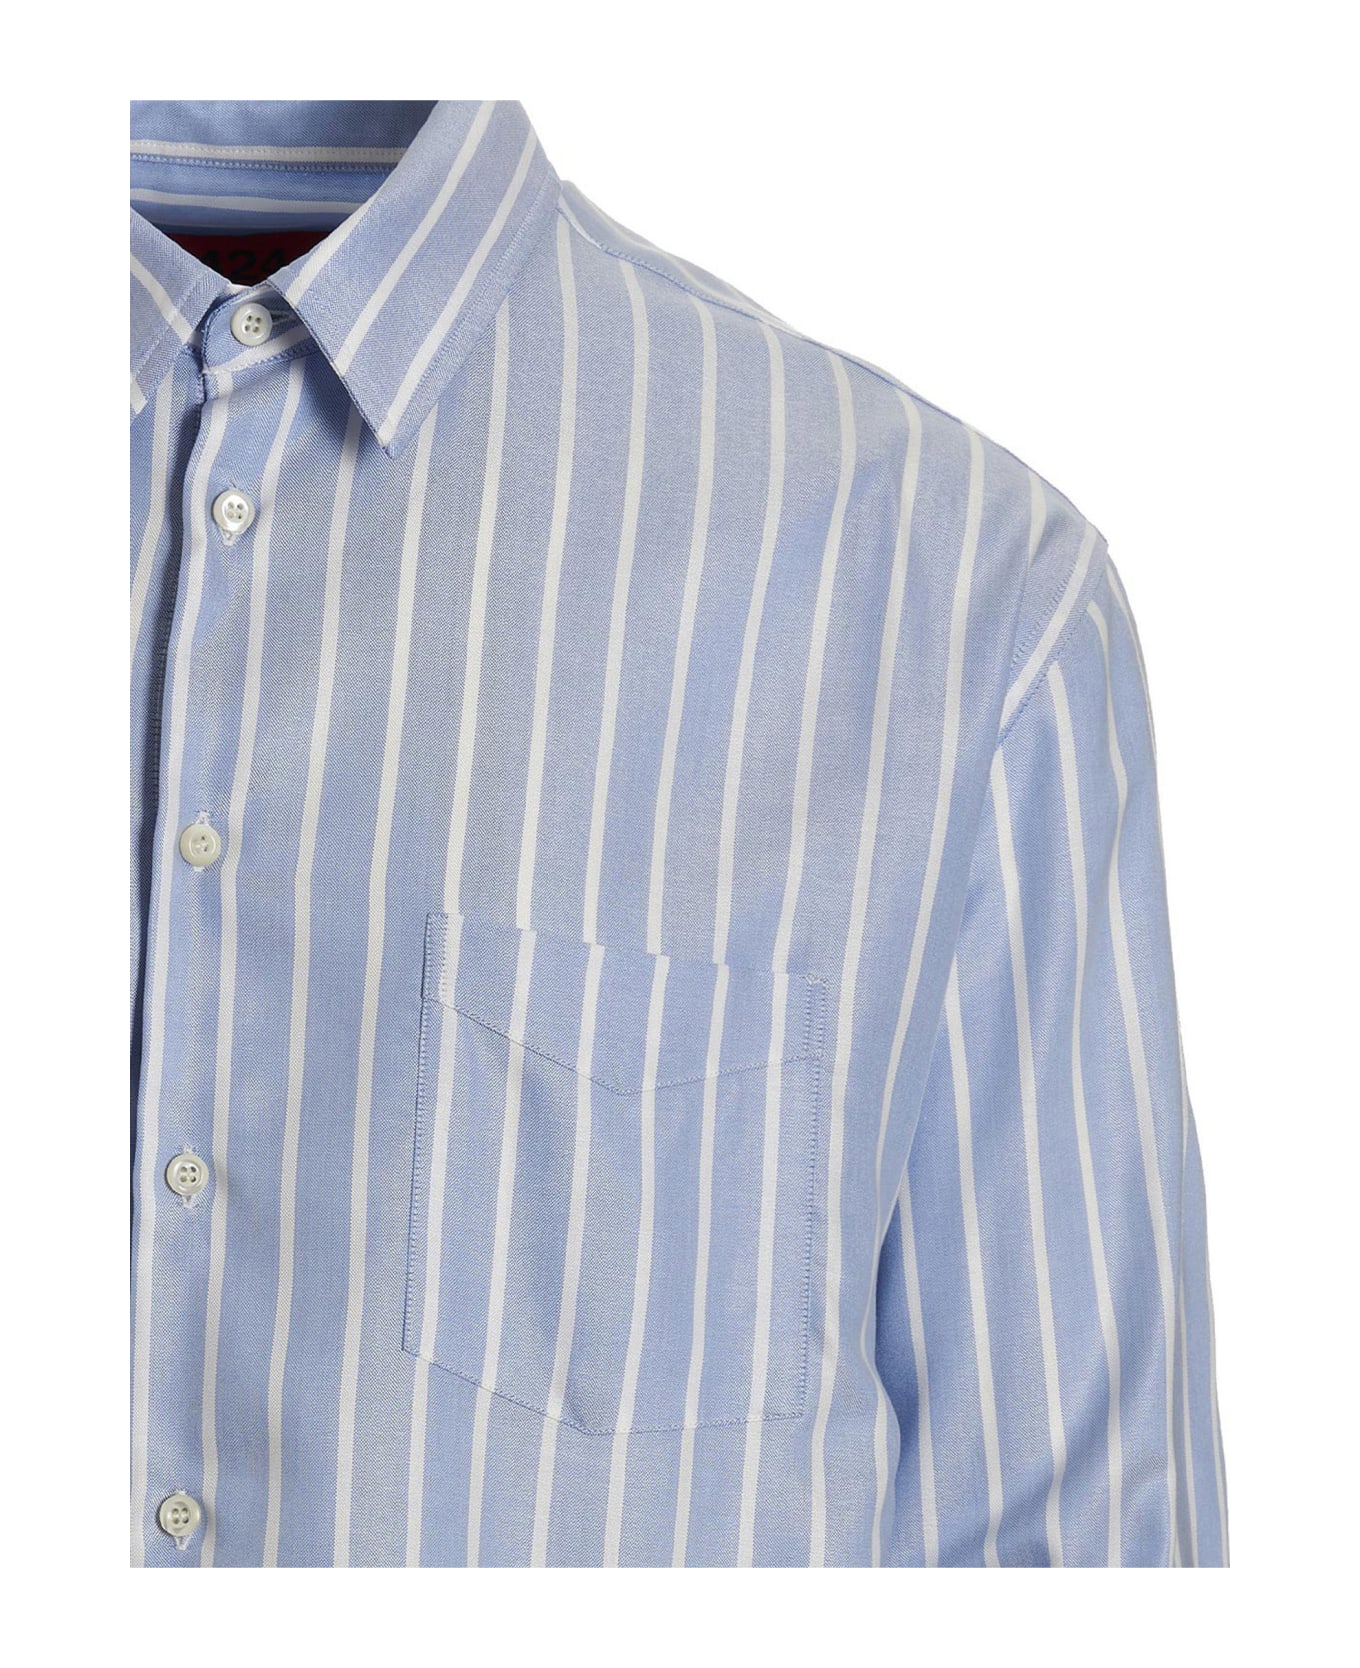 FourTwoFour on Fairfax Striped Shirt - Light Blue